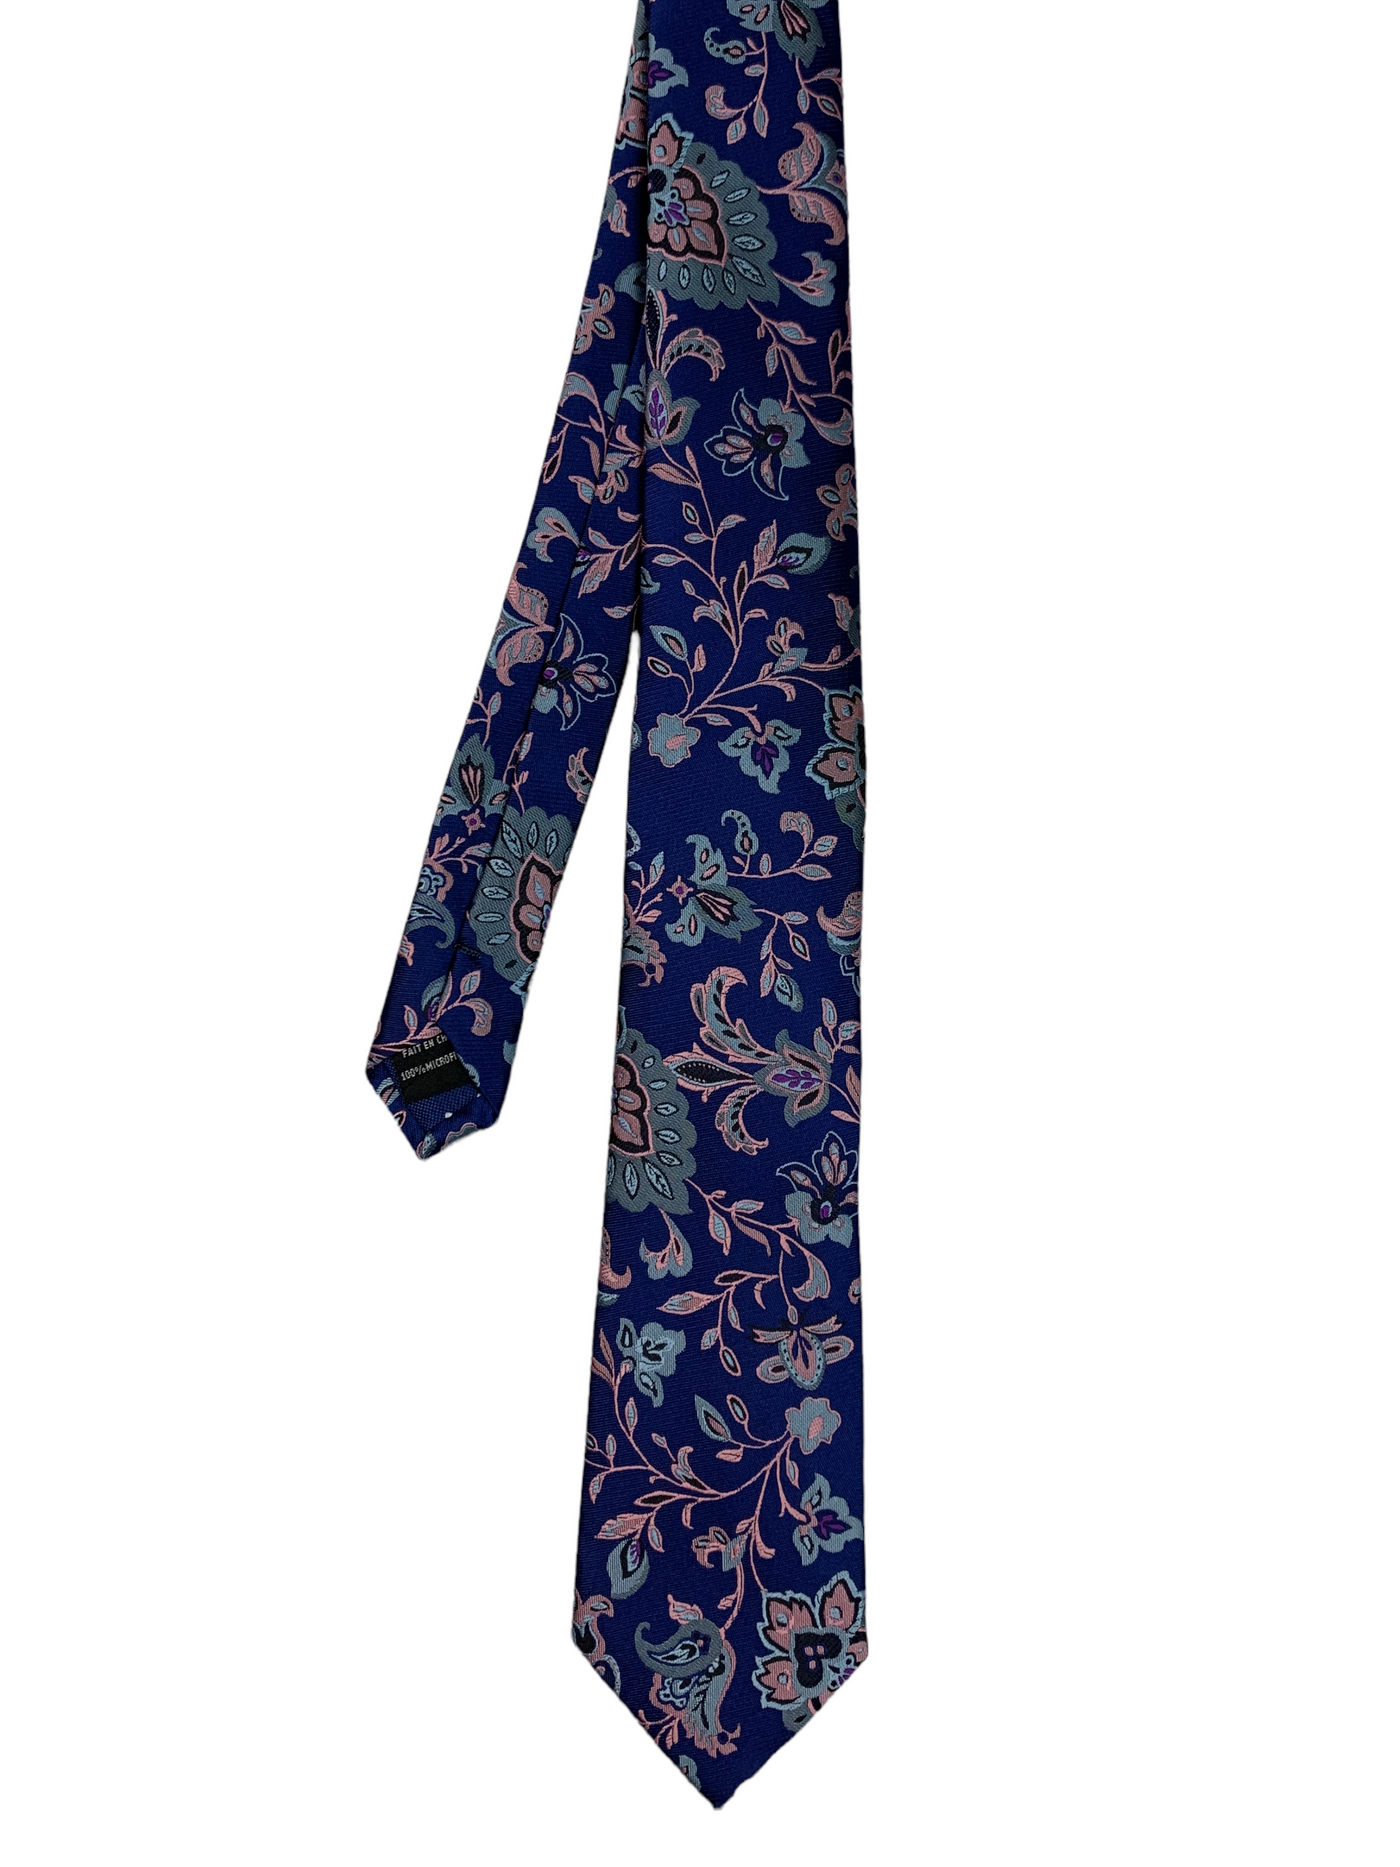 Cravate bleue à motif floral